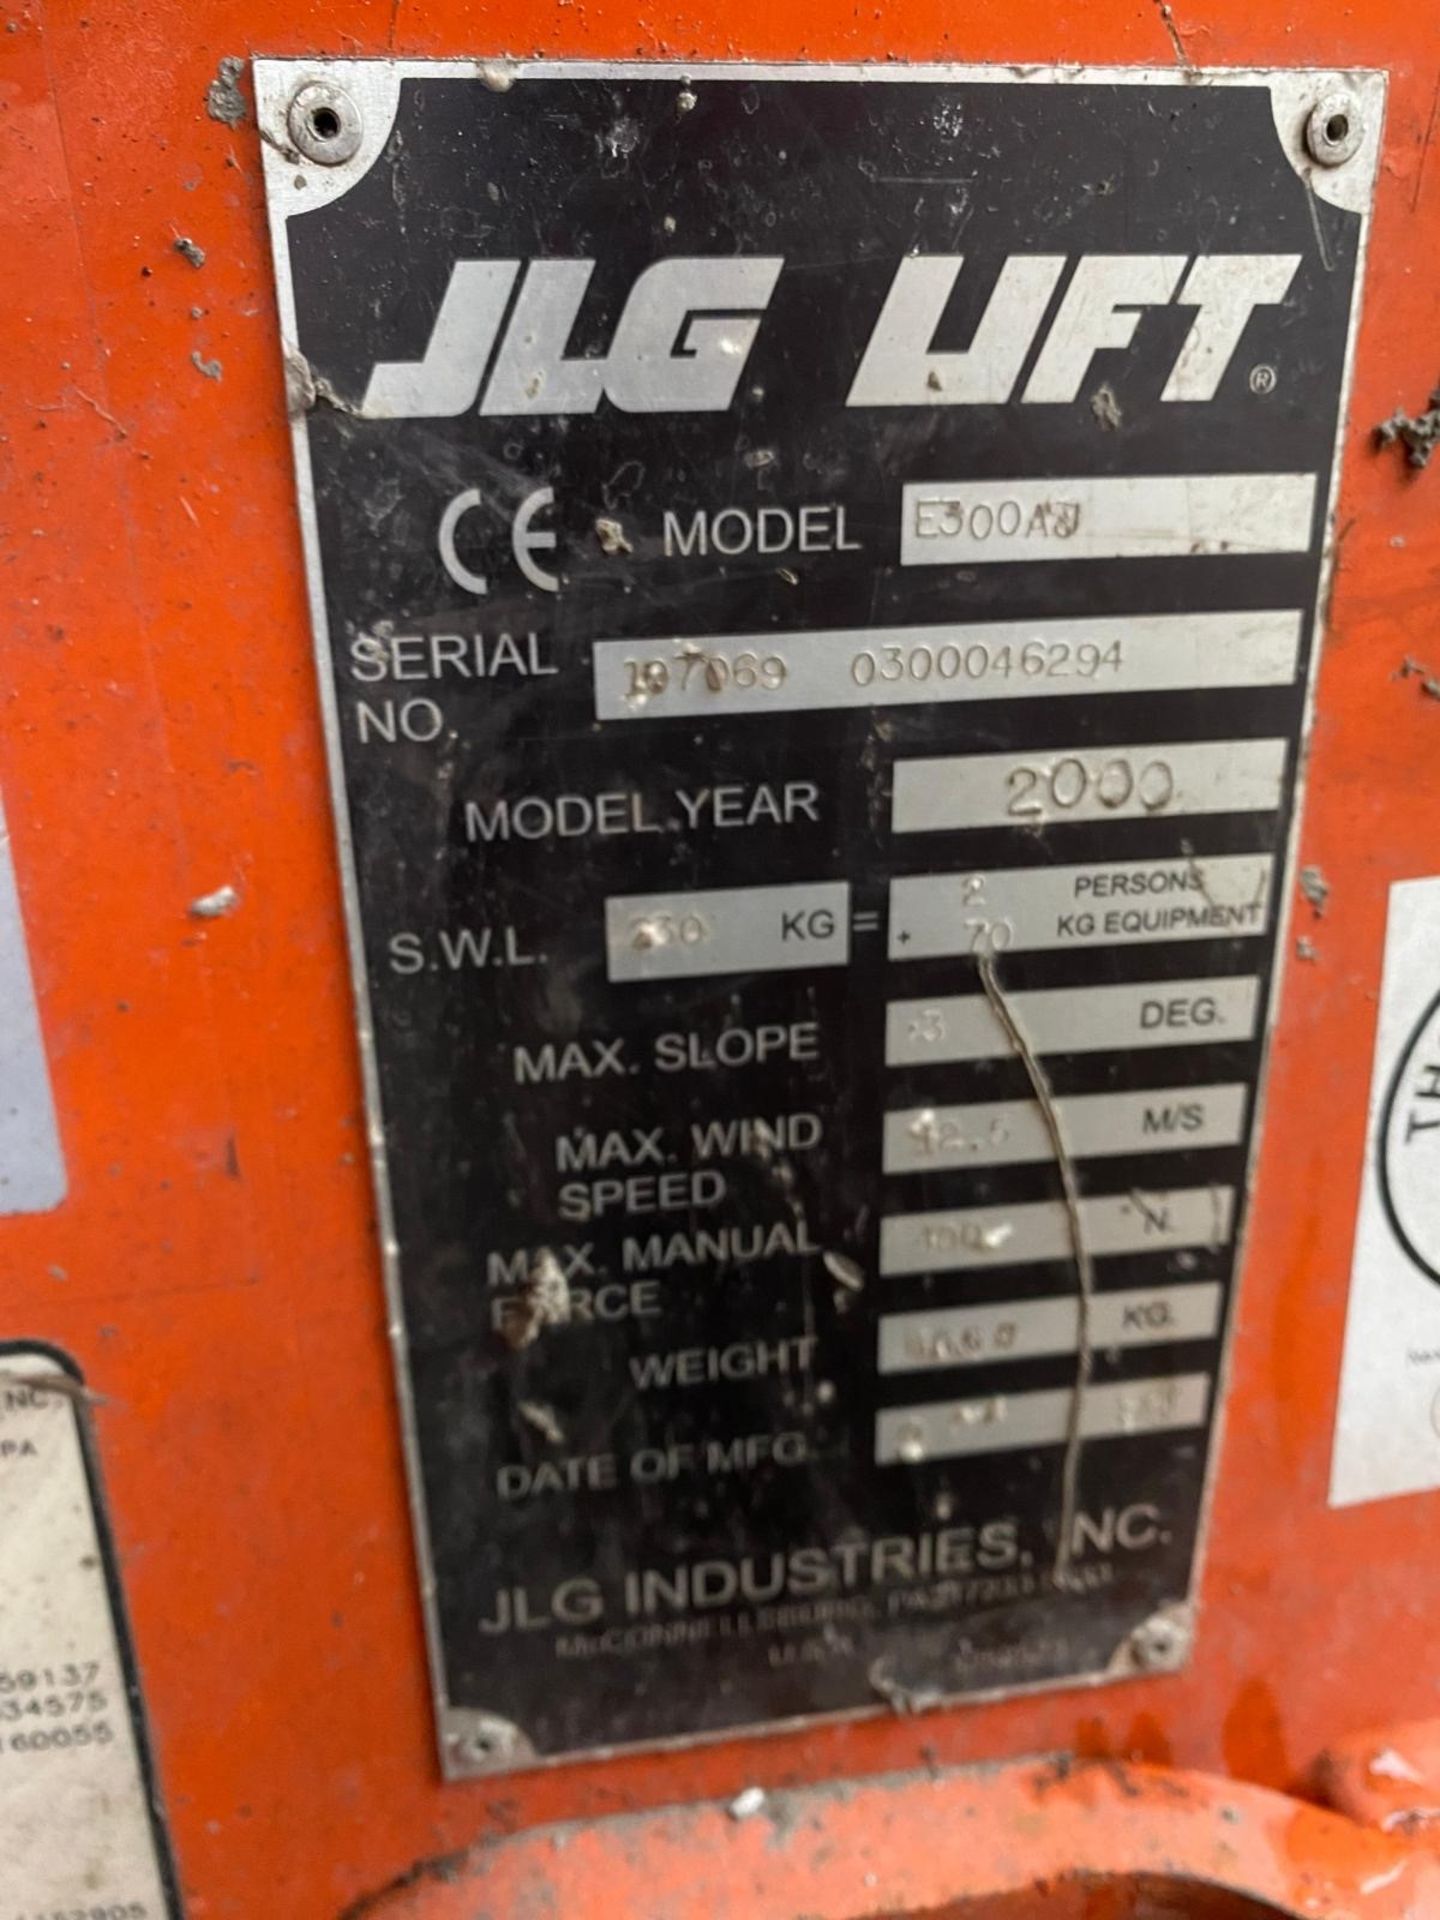 JLG Model E300 Cherry Picker Lift (2000 Model) - Bild 3 aus 12